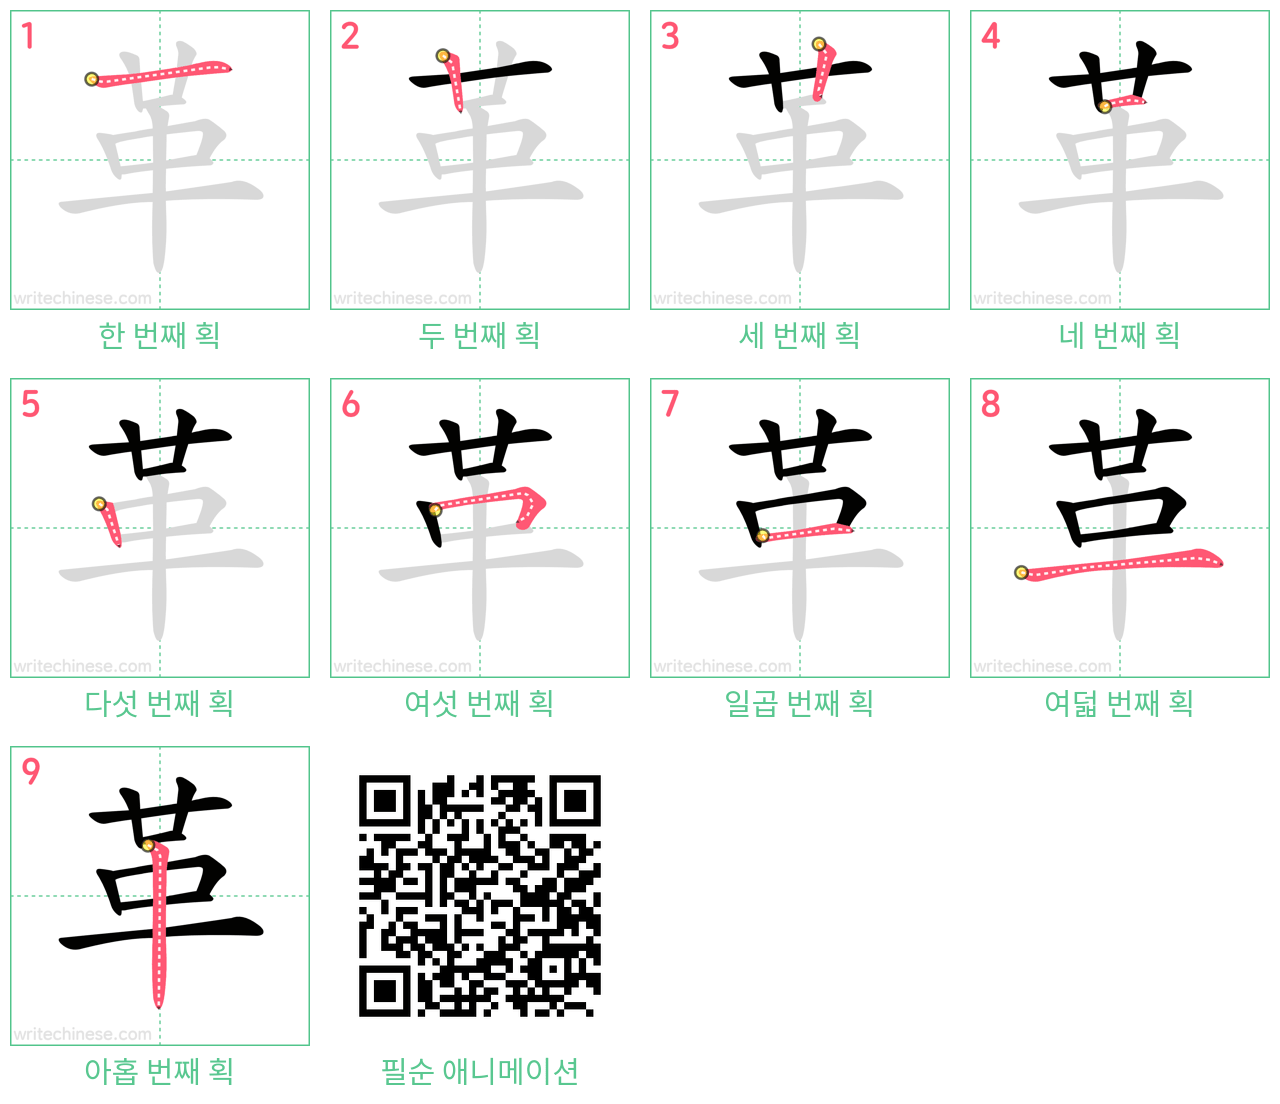 革 step-by-step stroke order diagrams